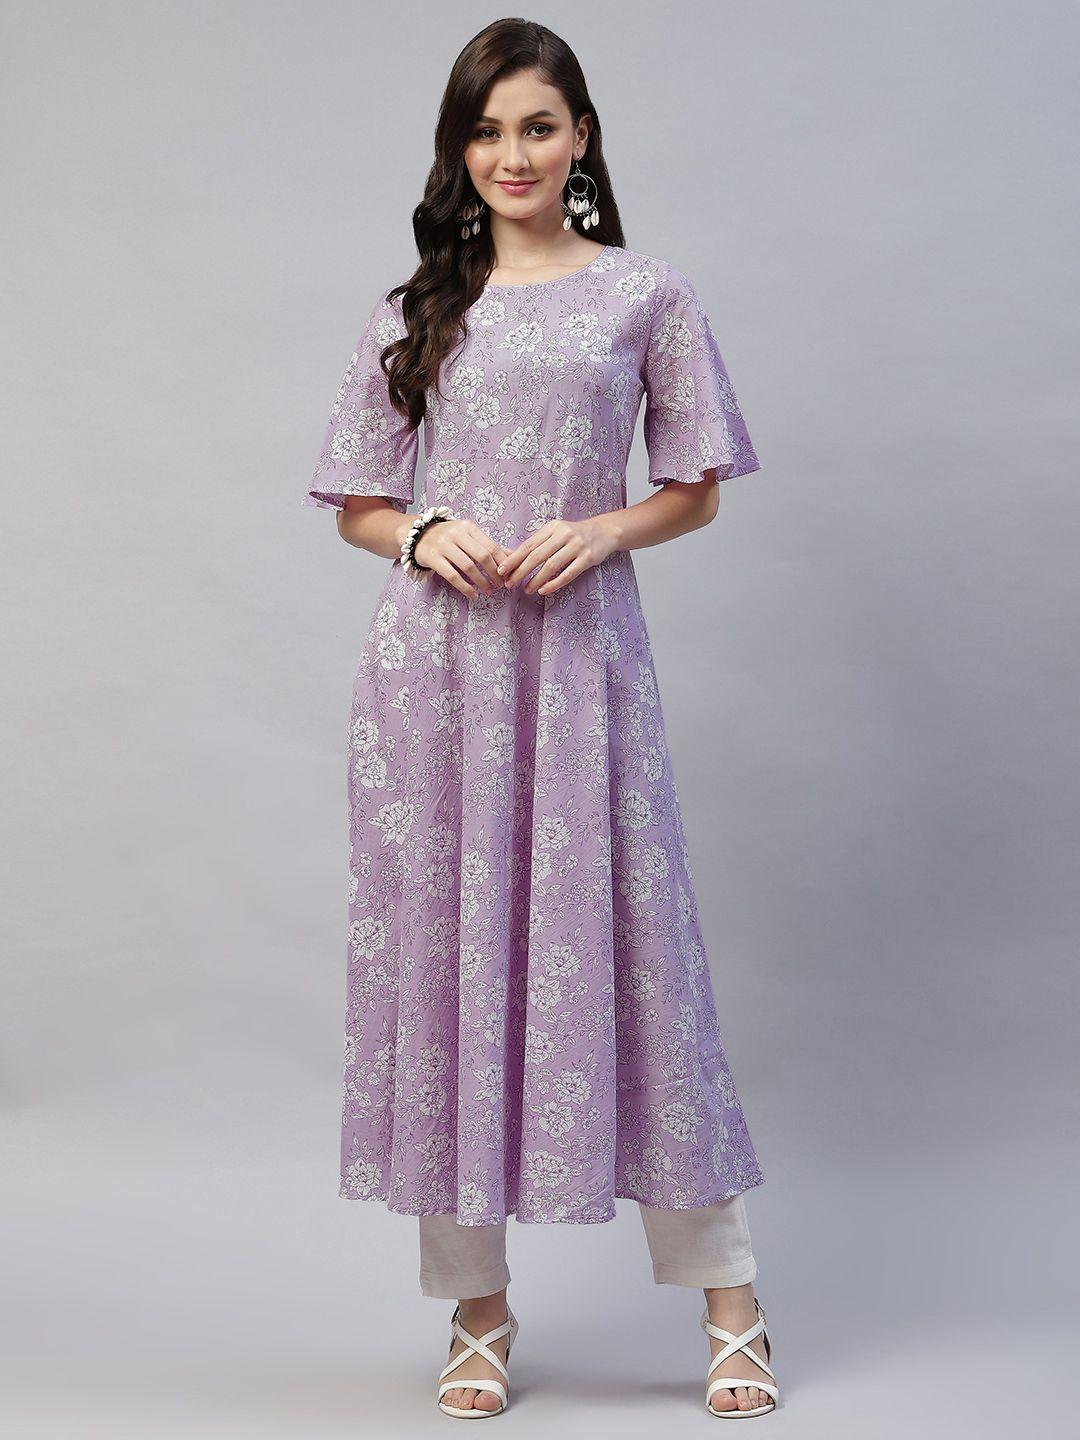 miravan women lavender floral printed flared sleeves floral anarkali kurta